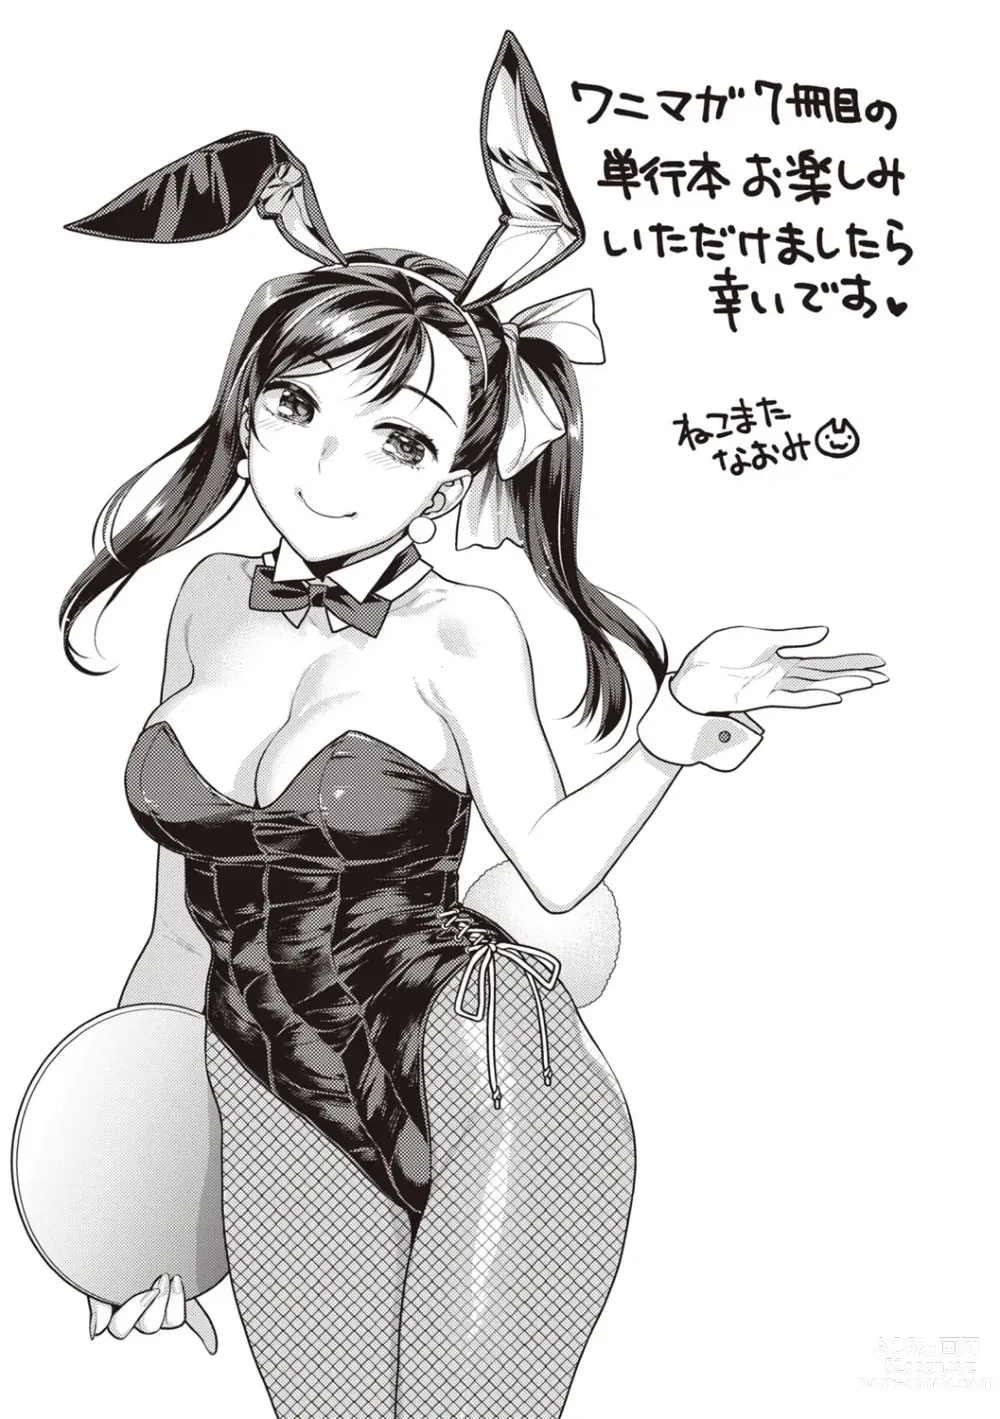 Page 161 of manga Totsumachi Nyanko